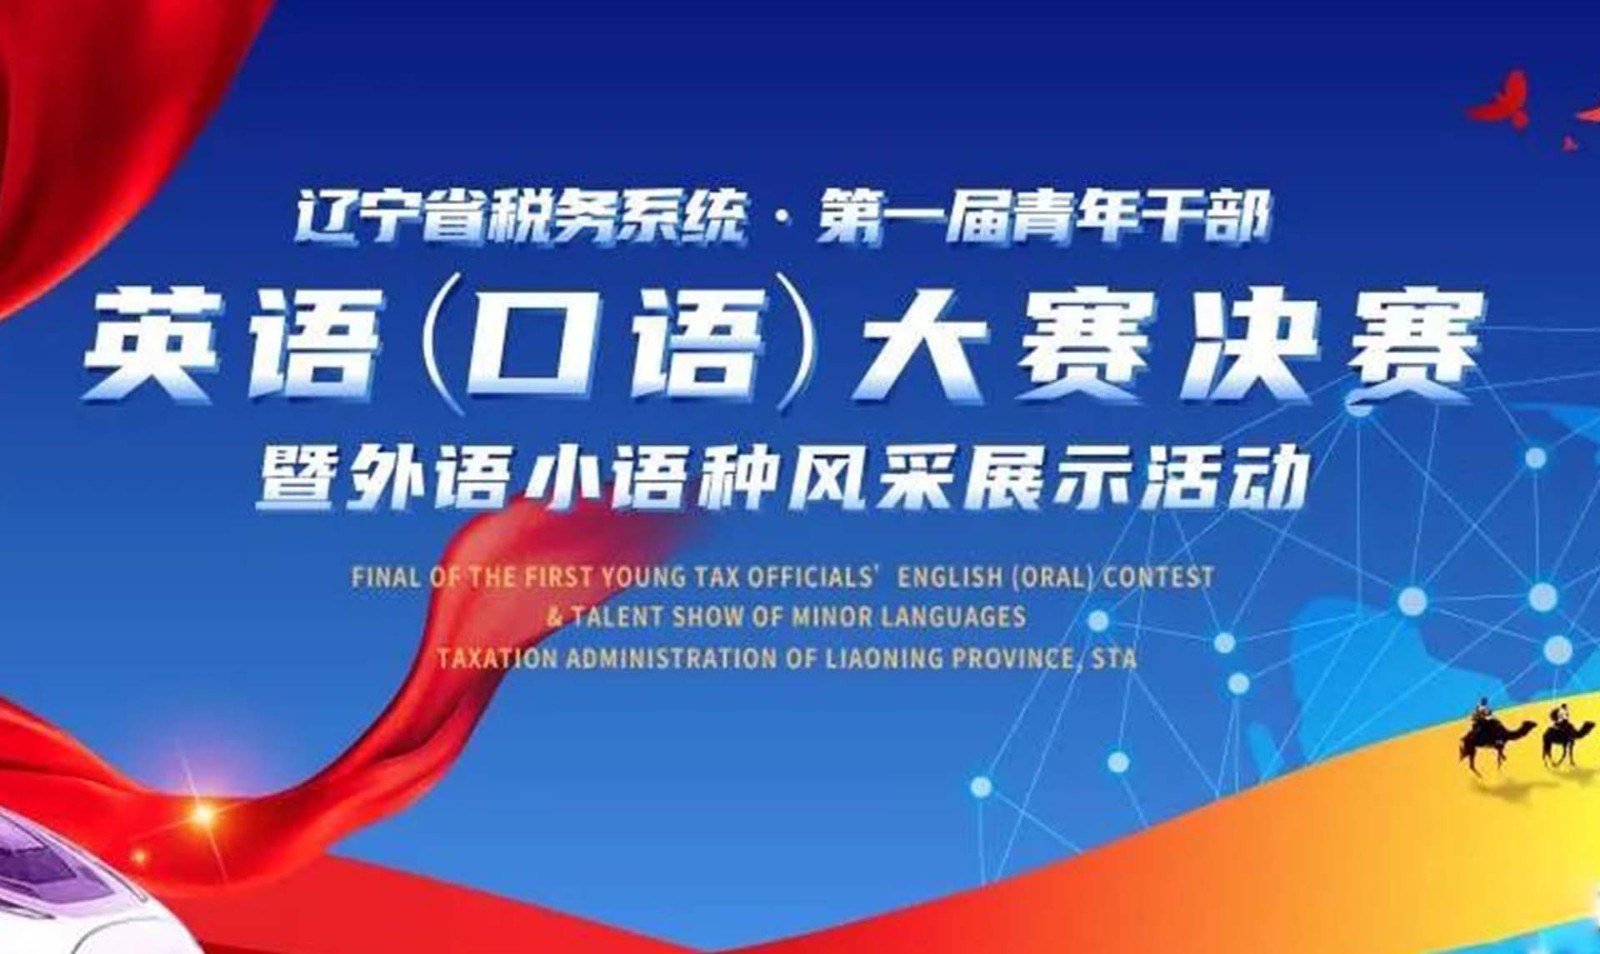 辽宁省税务系统第一届青年干部英语（口语）大赛决赛暨外语小语种风采展示活动